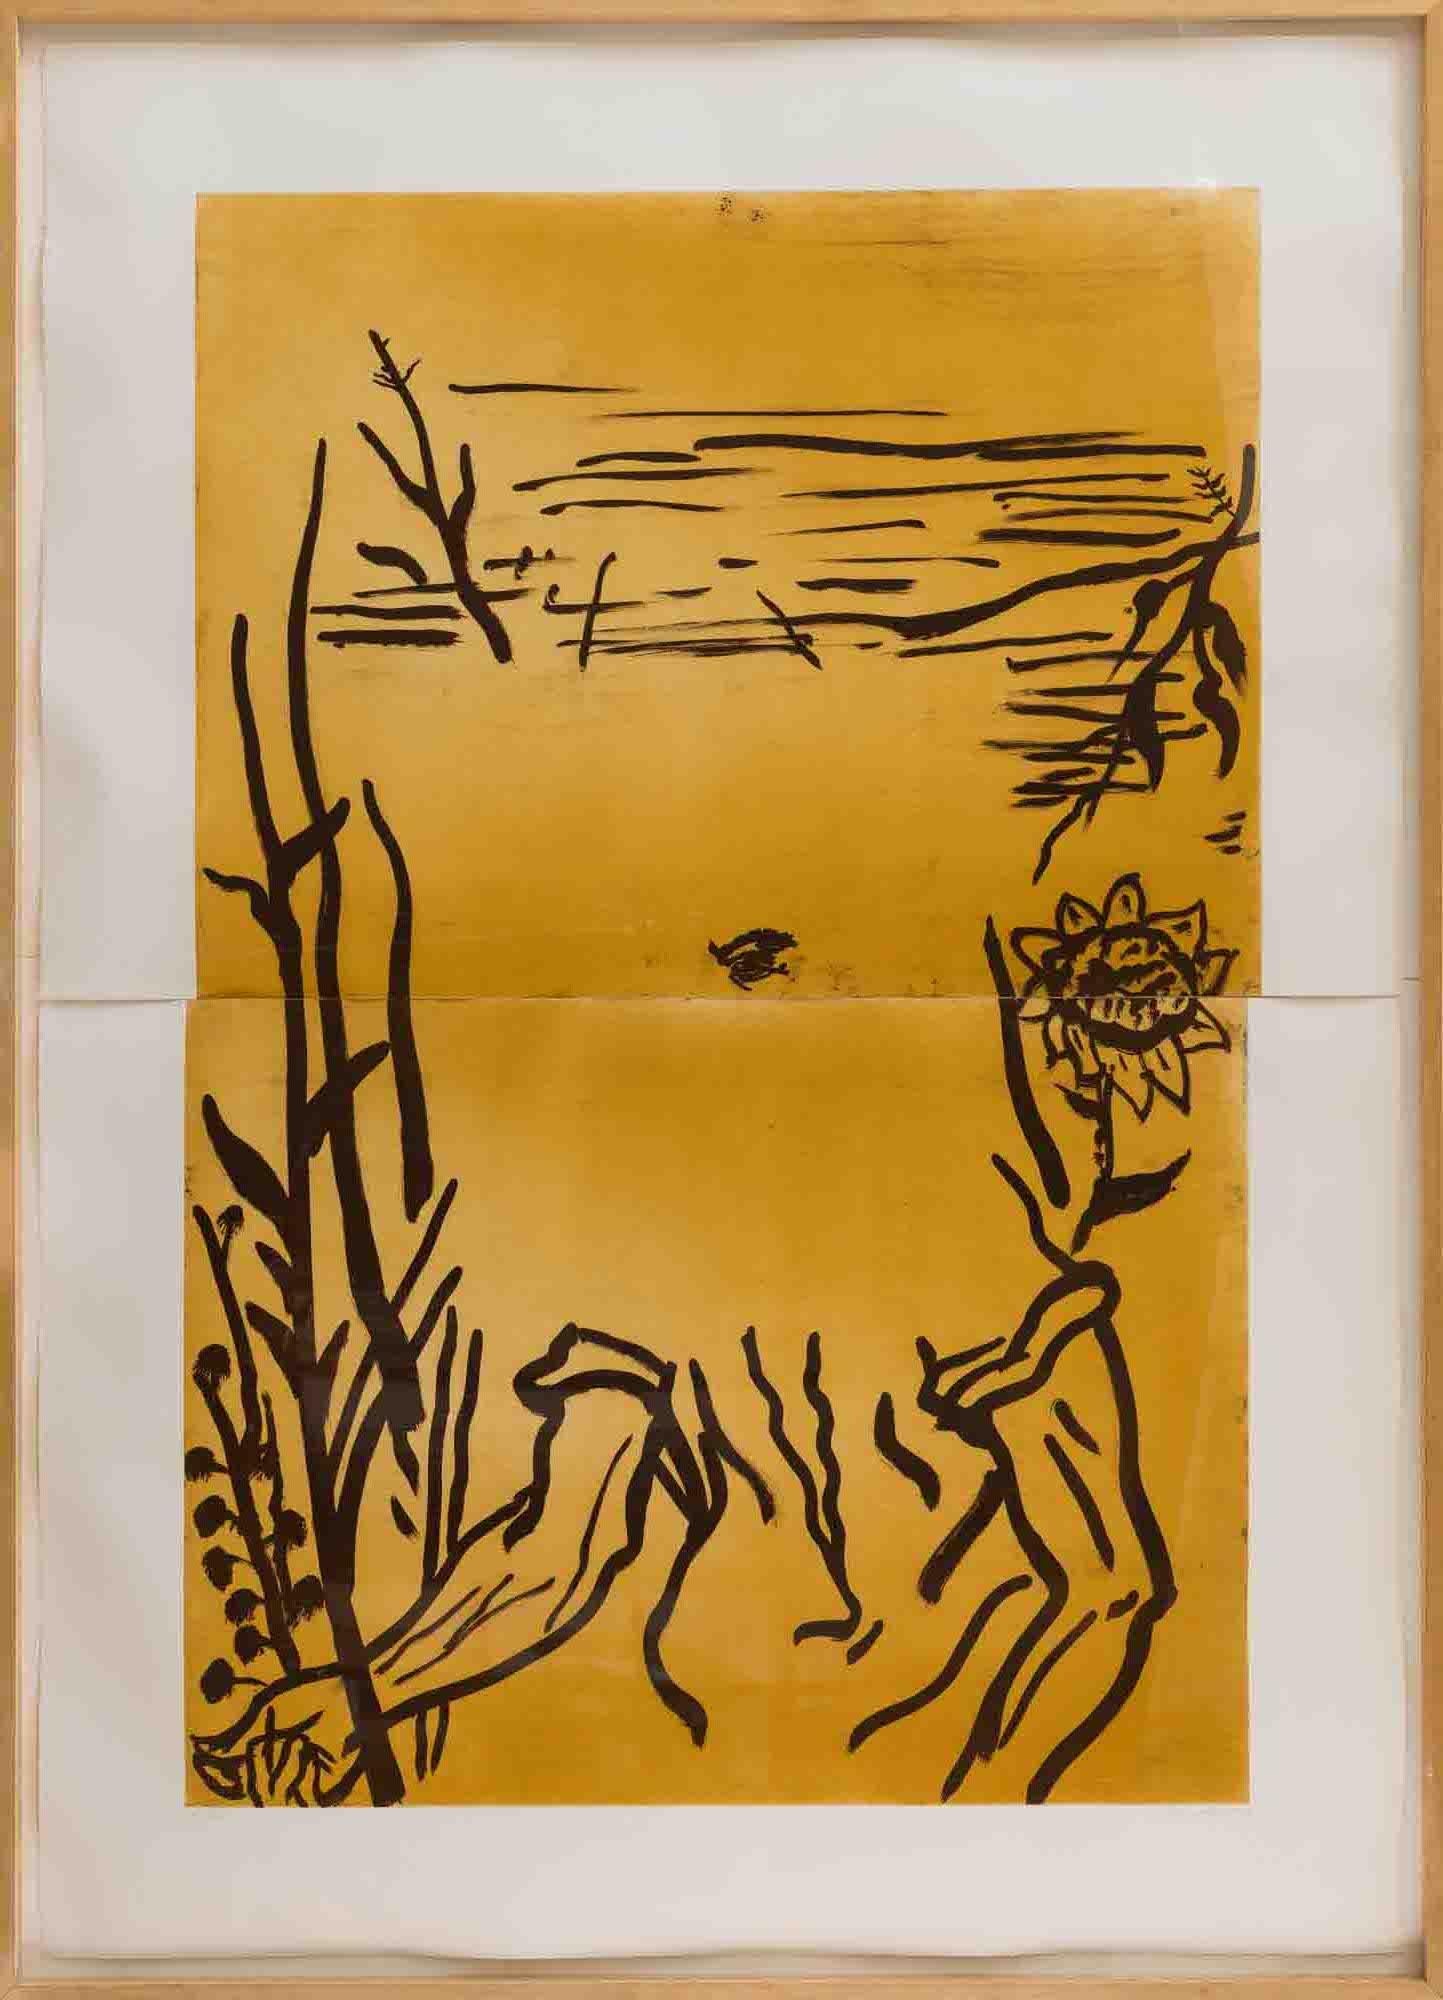 Abstract Print Julian Schnabel - Sans titre de BROOKLYN ACADEMY OF MUSIC 1986-87